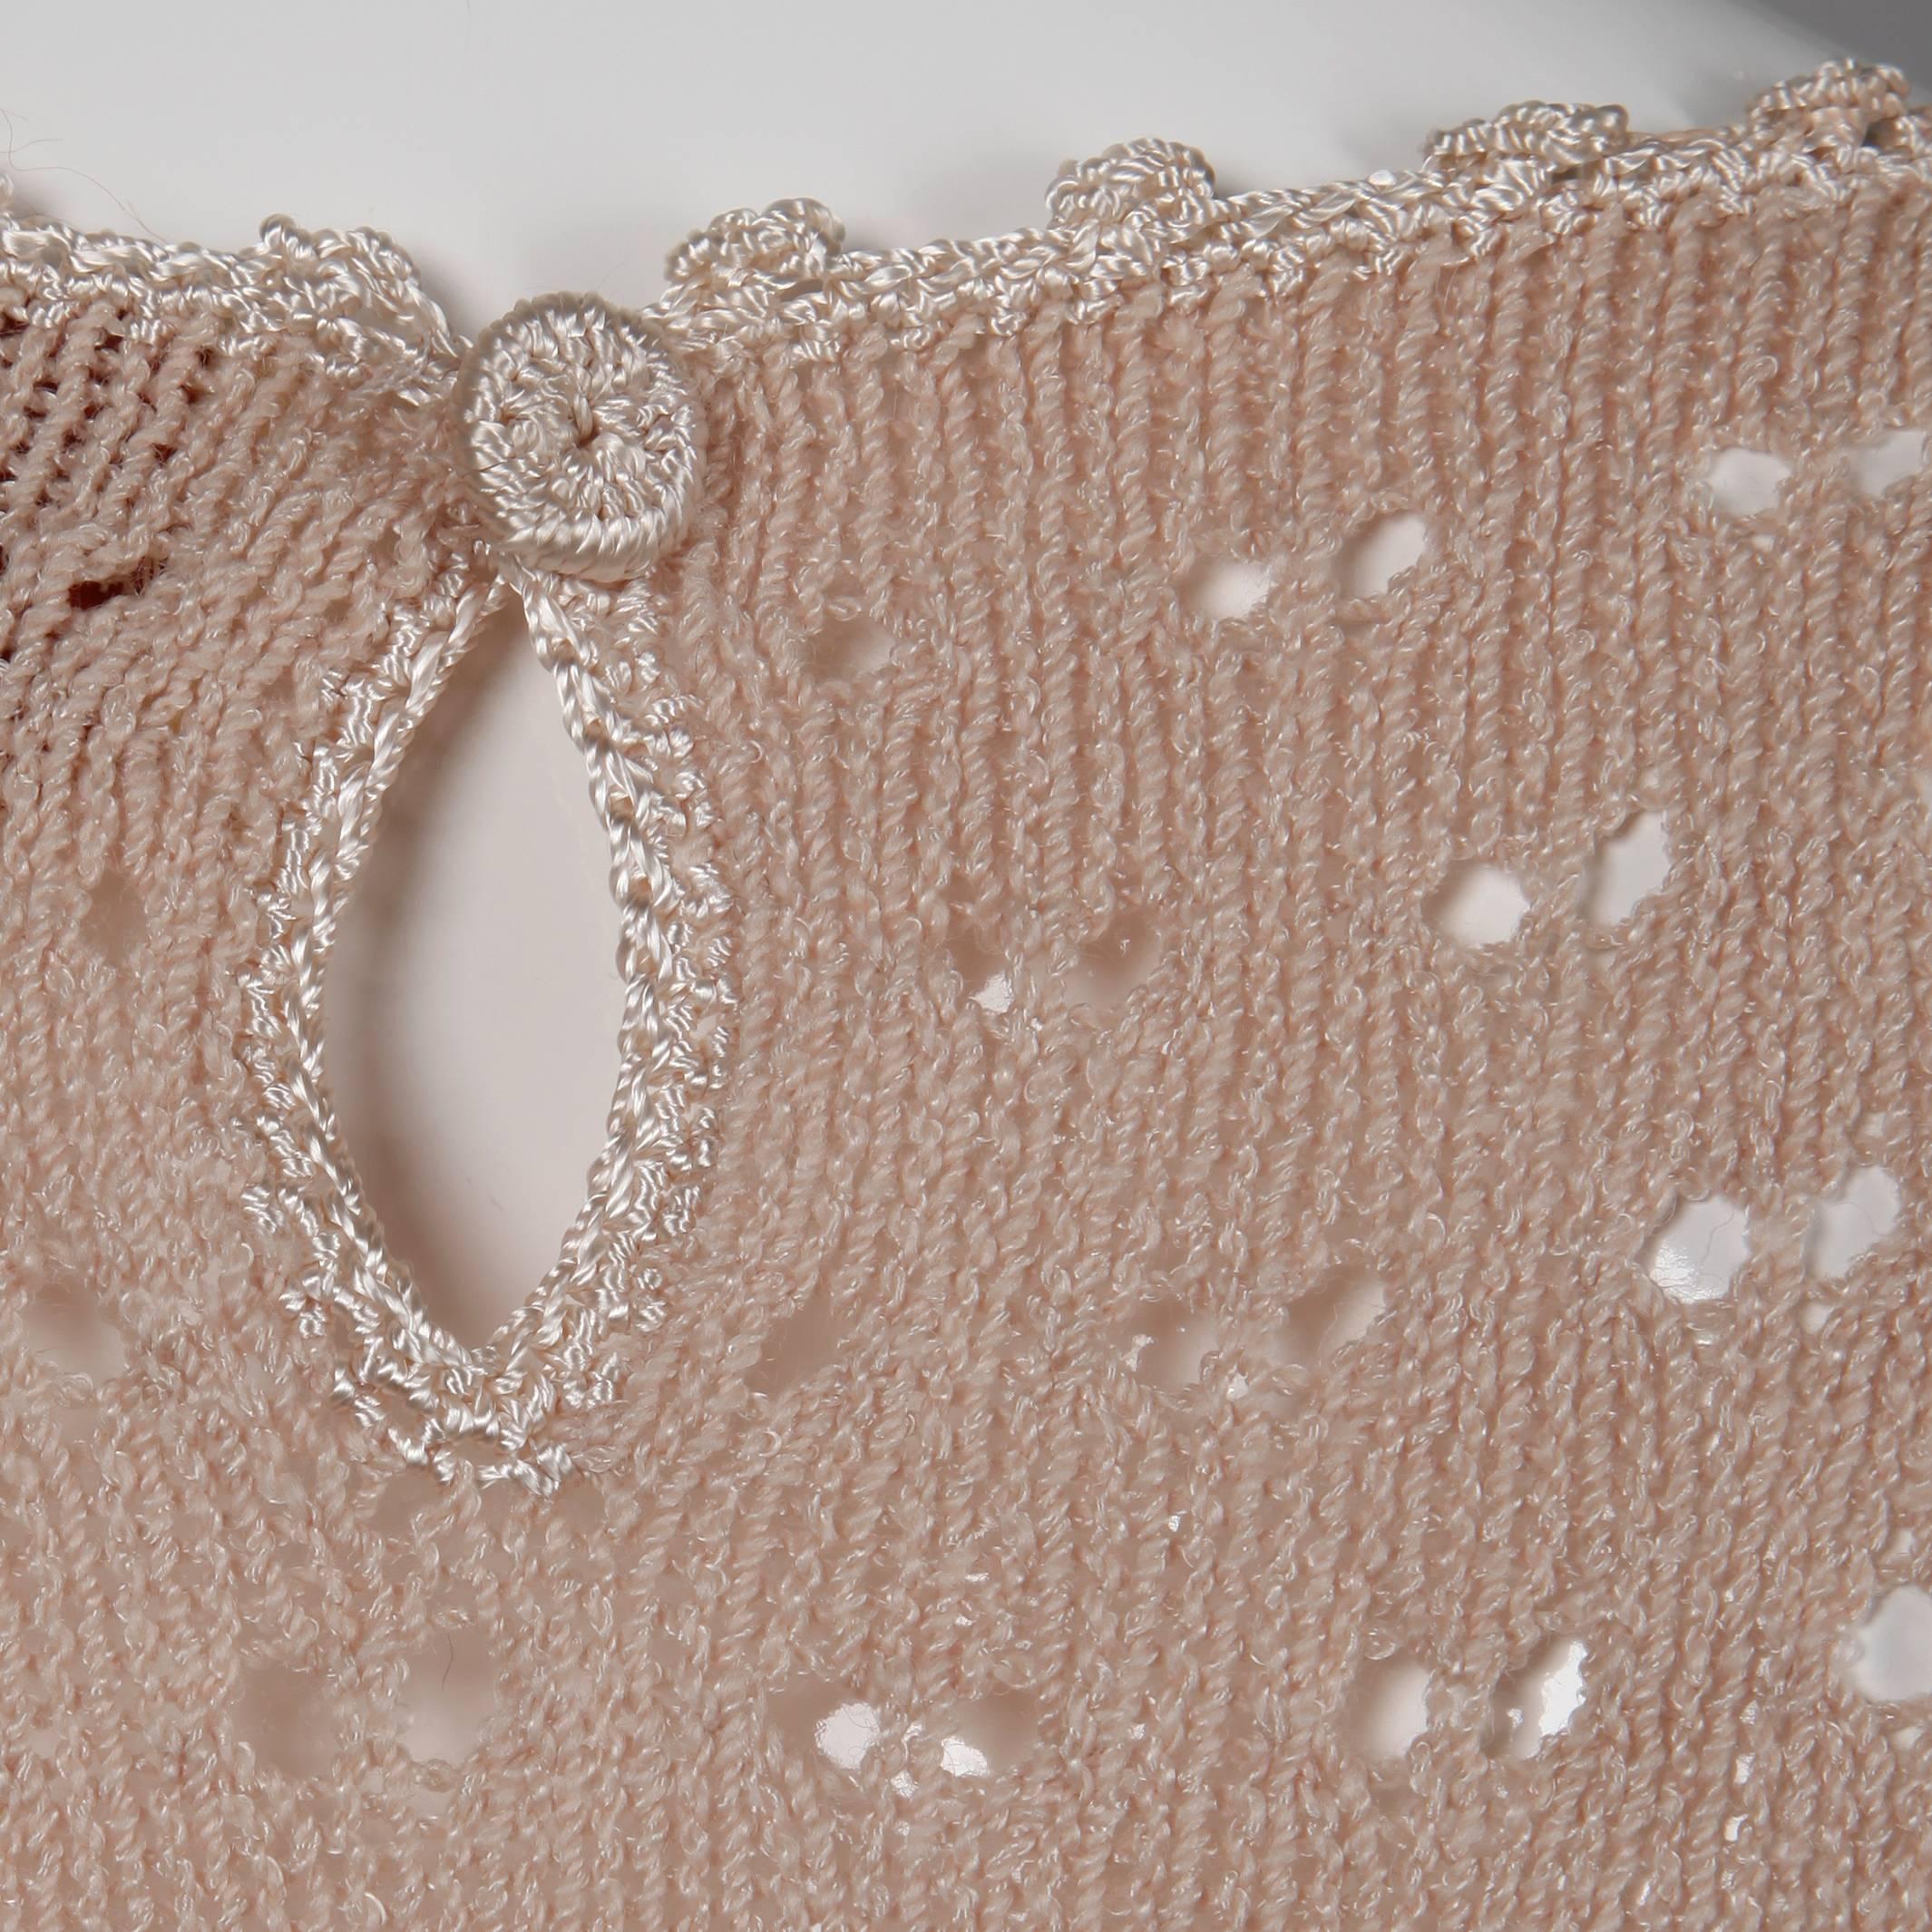 Women's 1970s Oscar de la Renta Vintage Dusty Pink/ Blush Knit + Crochet Sweater Dress